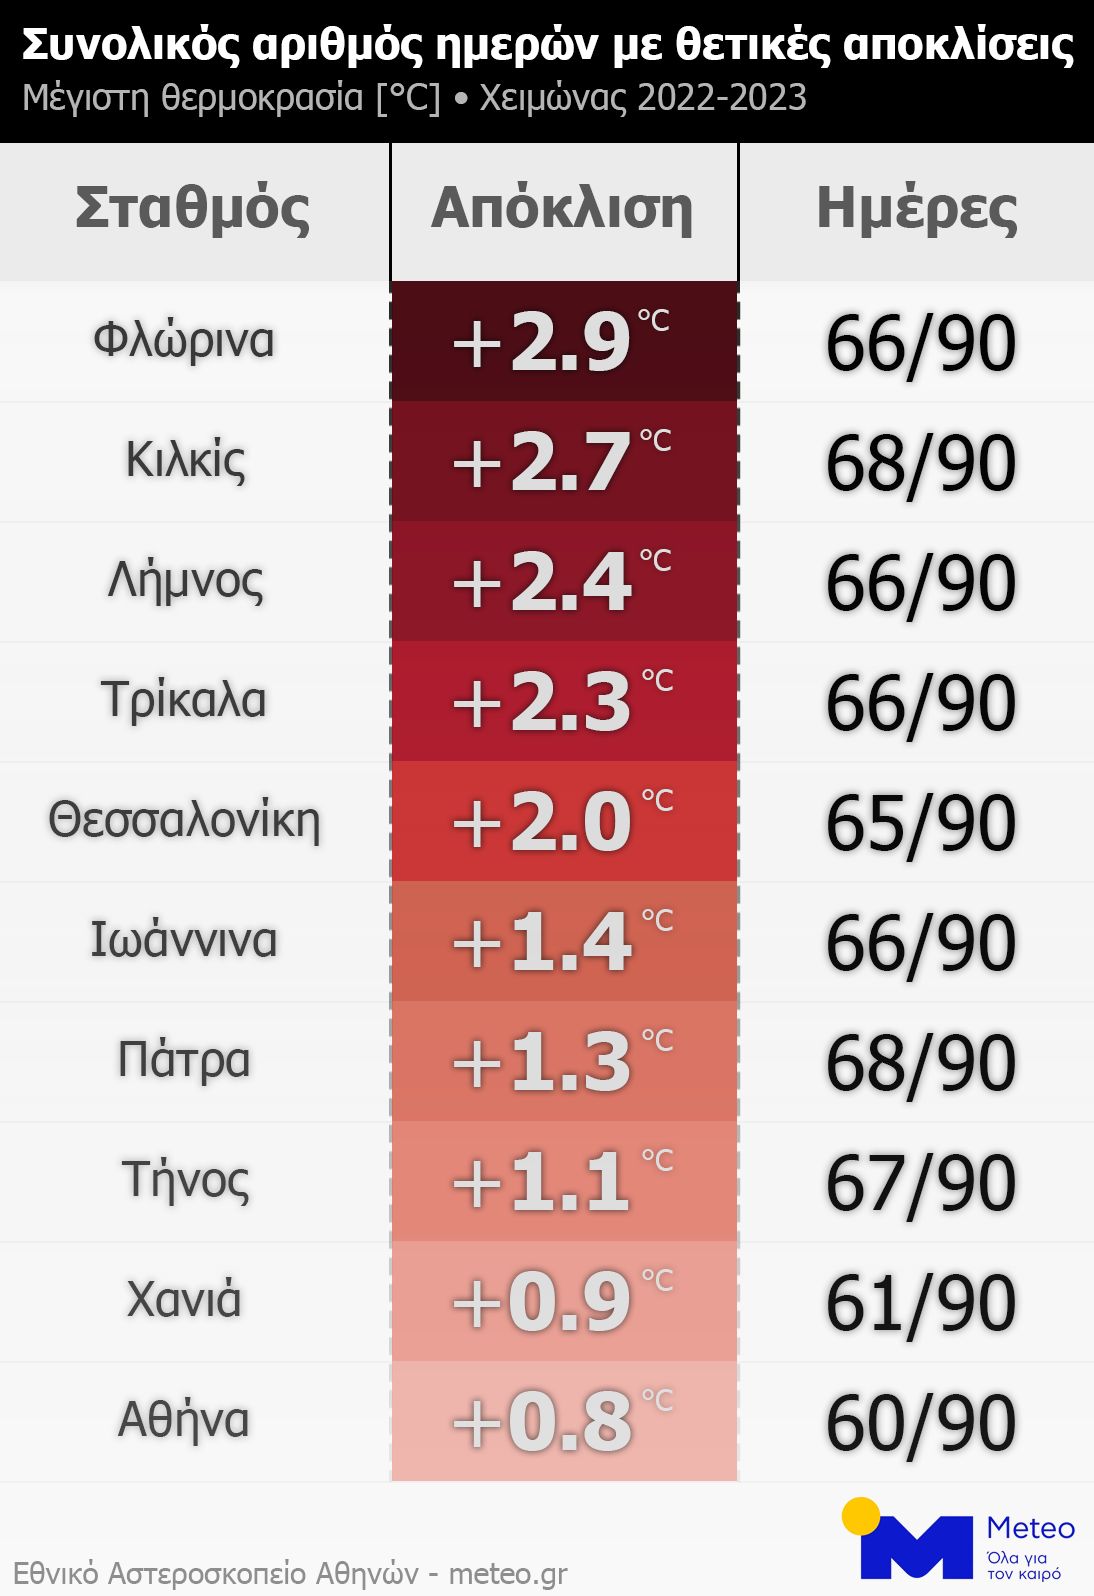 Σε πολύ υψηλά επίπεδα η θερμοκρασία τον φετινό χειμώνα στην Ελλάδα-2